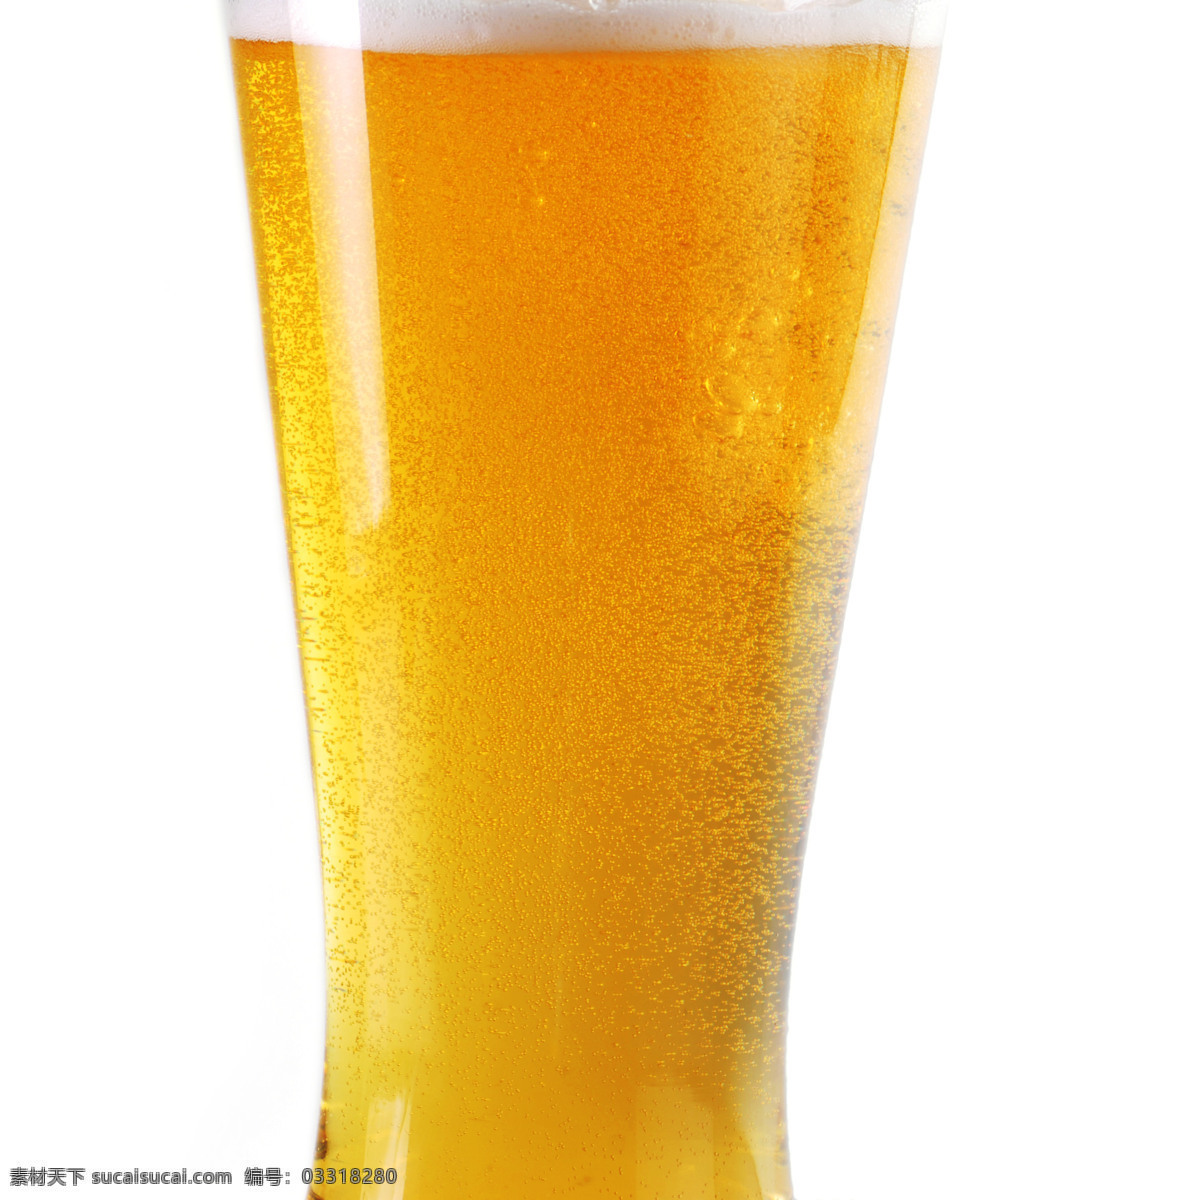 大杯啤酒 啤酒 酒水饮料 餐厅美食 美味 黄色啤酒 餐饮美食 白色